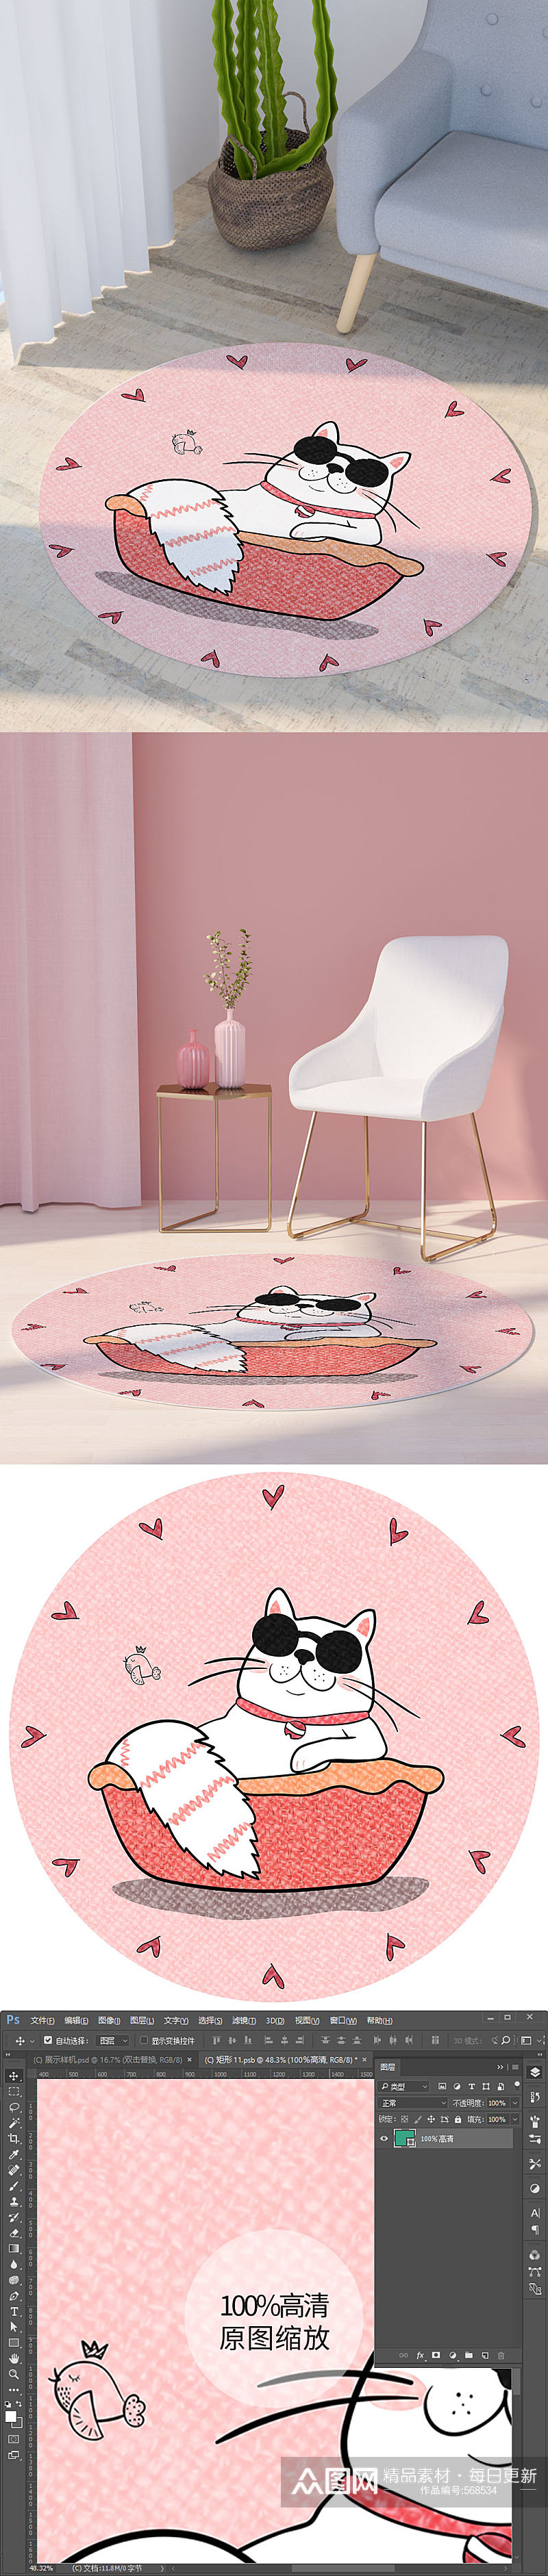 圆形卡通墨镜小猫洗澡可爱爱心地毯印花图案素材